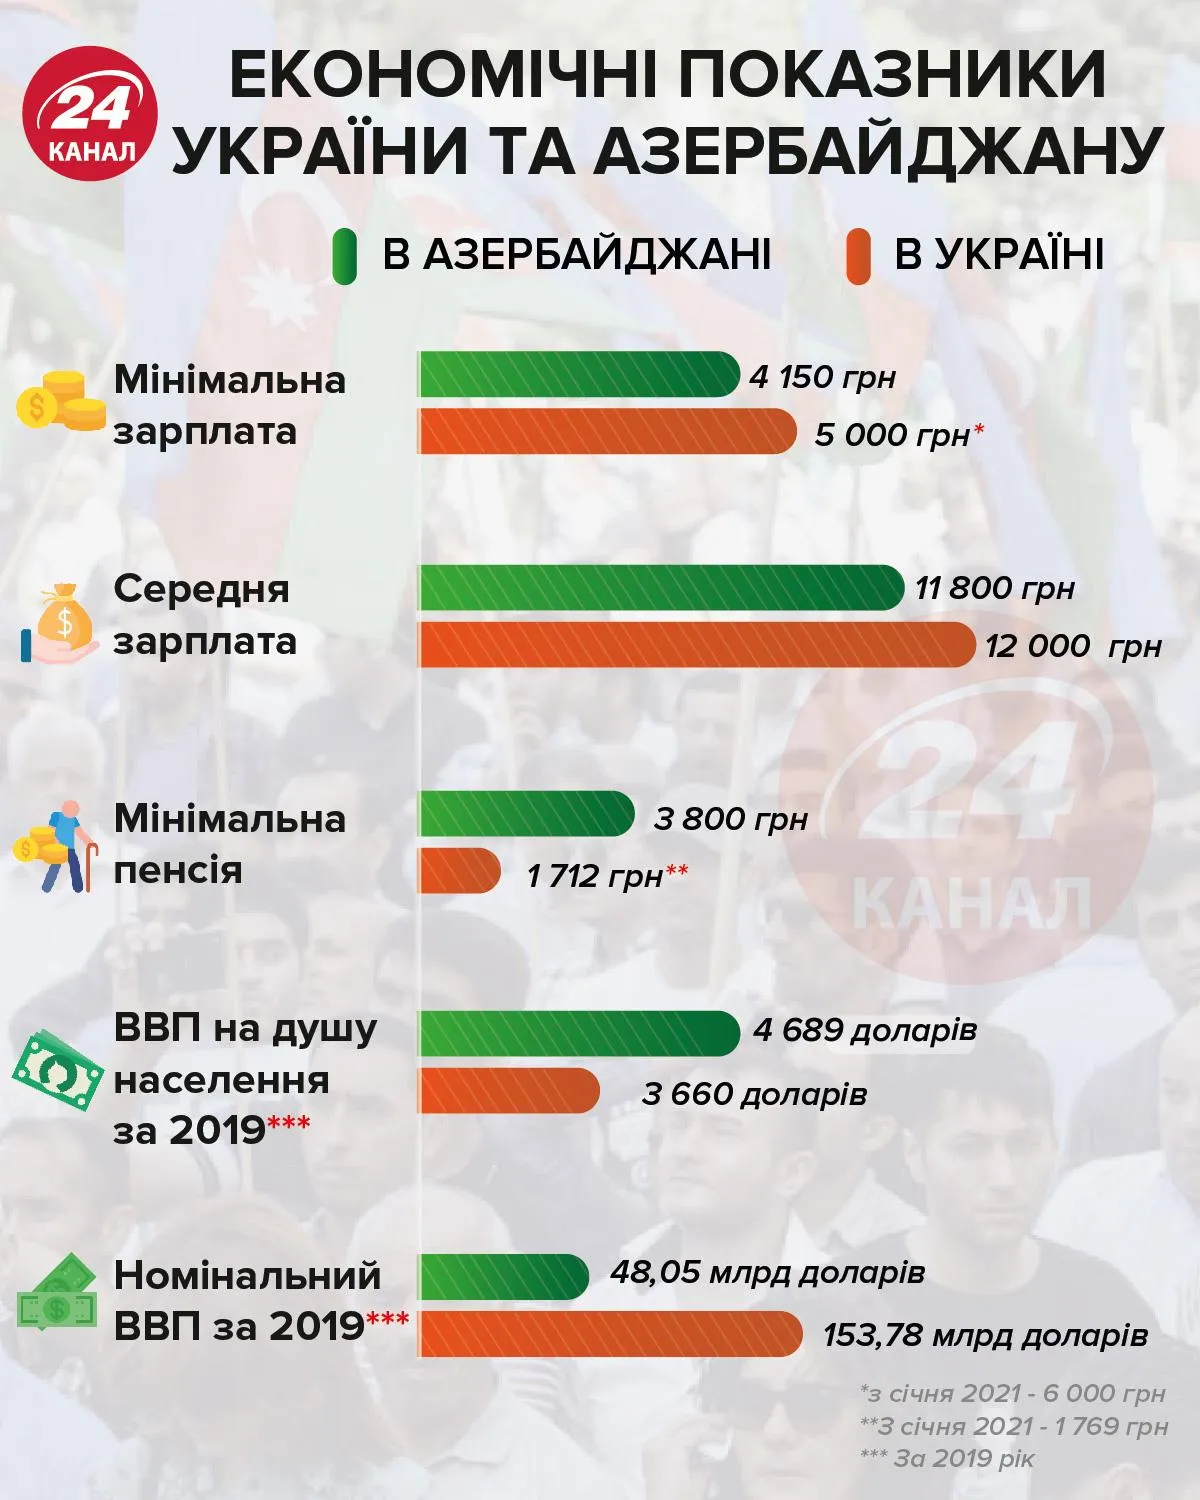 Экономические показатели Украины и Азербайджана Инфографика 24 канала